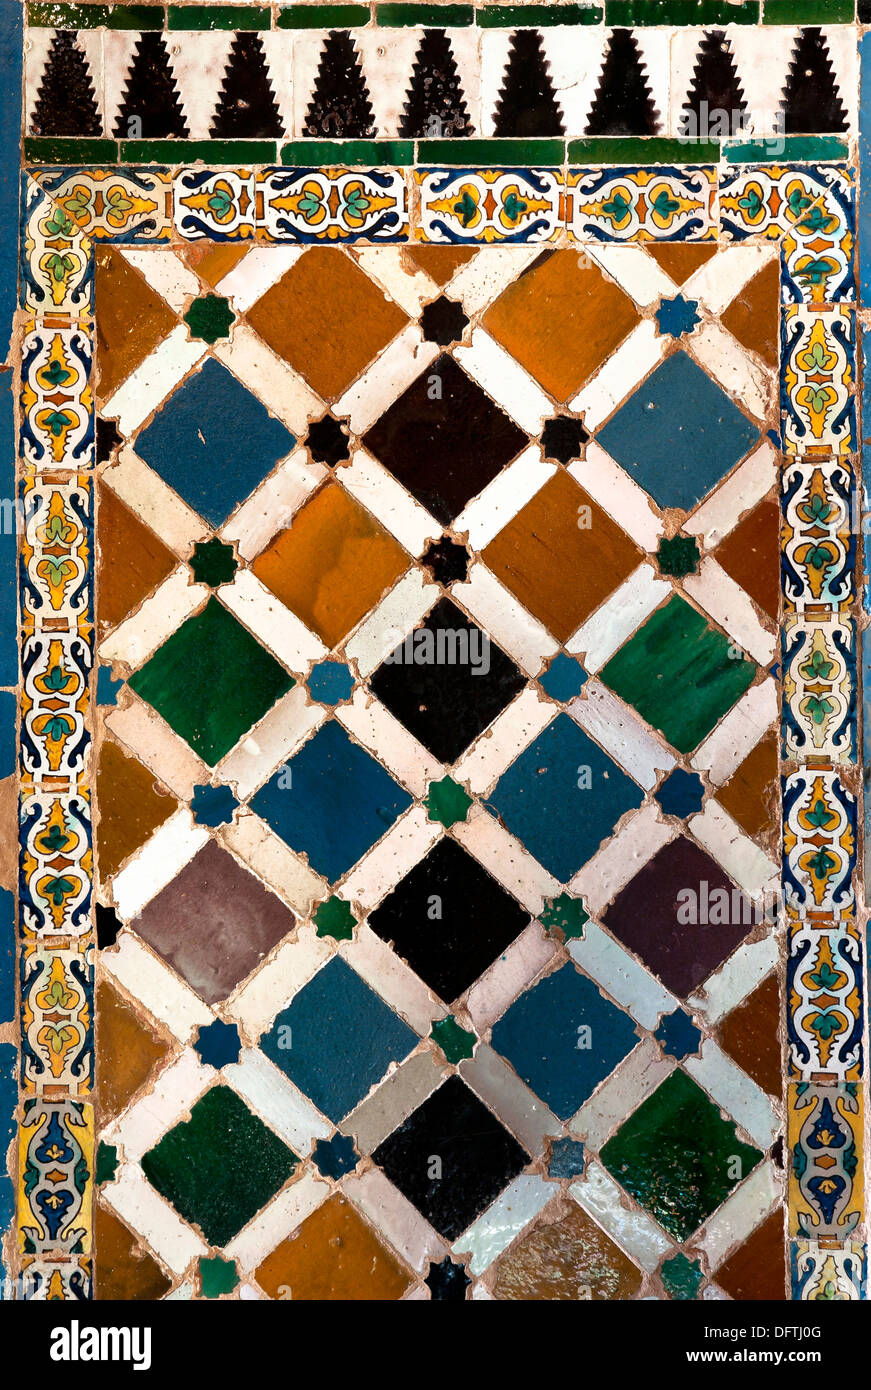 Corte dei Leoni - Piastrelle, Alhambra di Granada, regione dell'Andalusia, Spagna, Europa Foto Stock